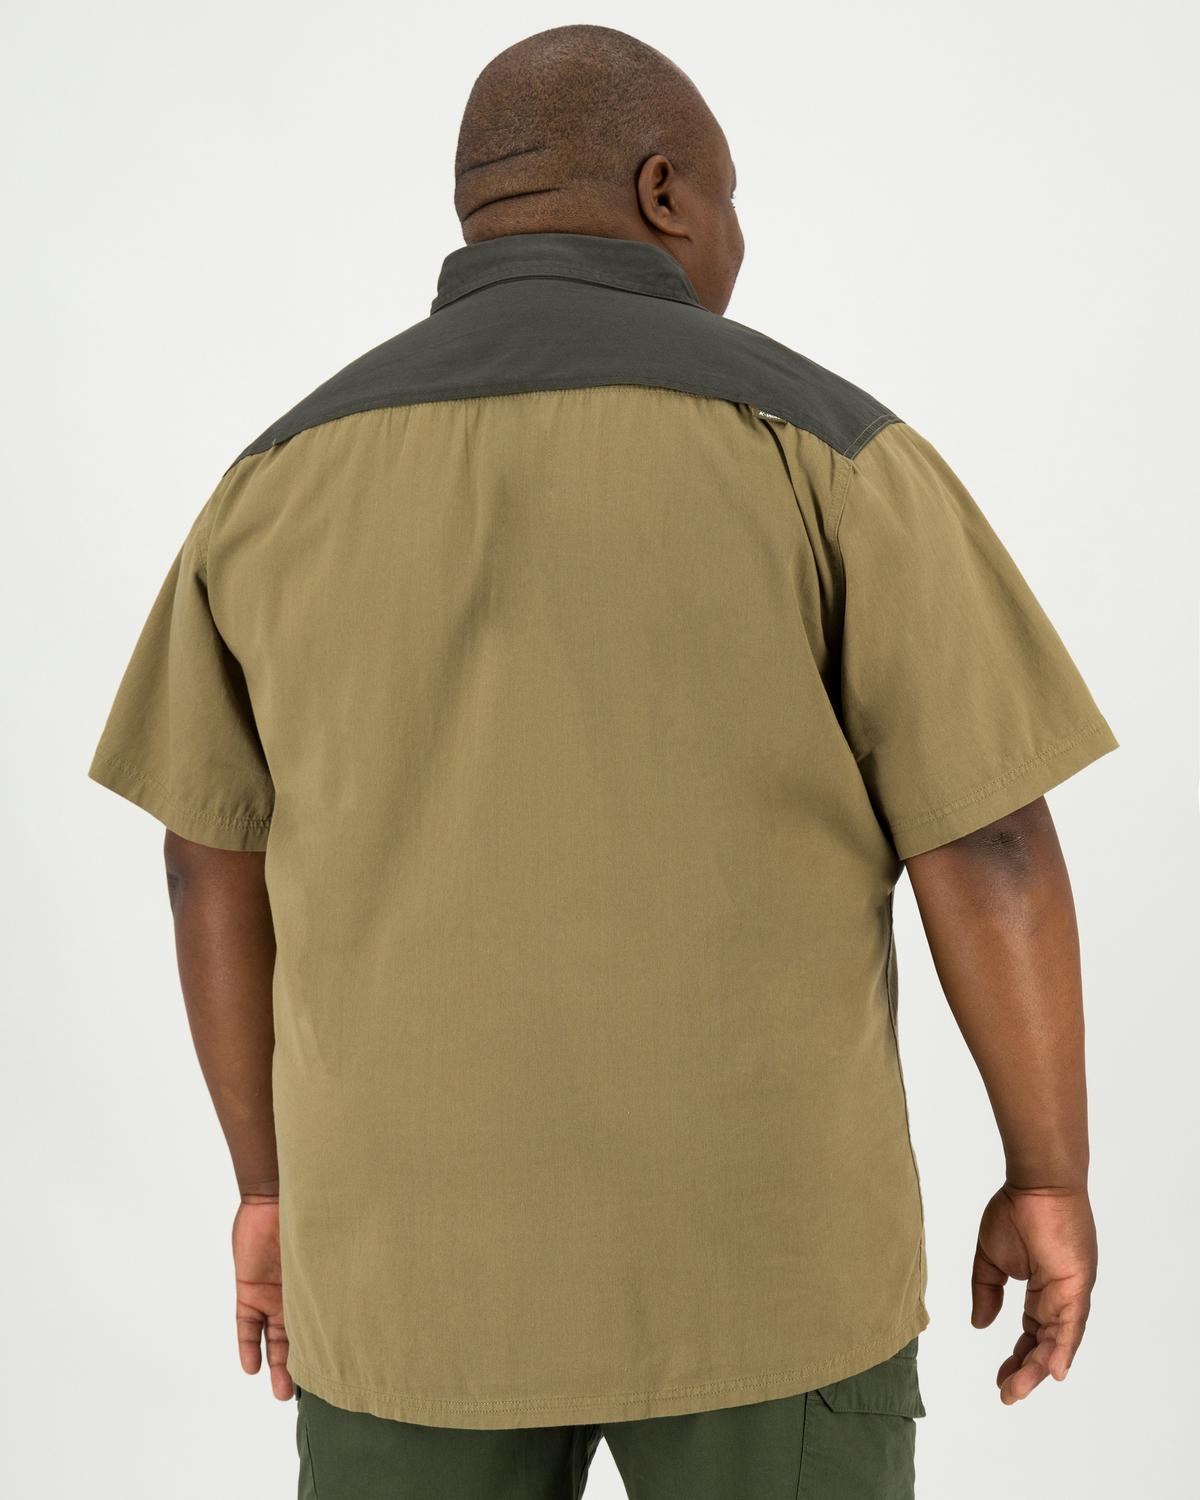 K-Way Elements Men's Safari Shirt Extended Sizes -  Khaki